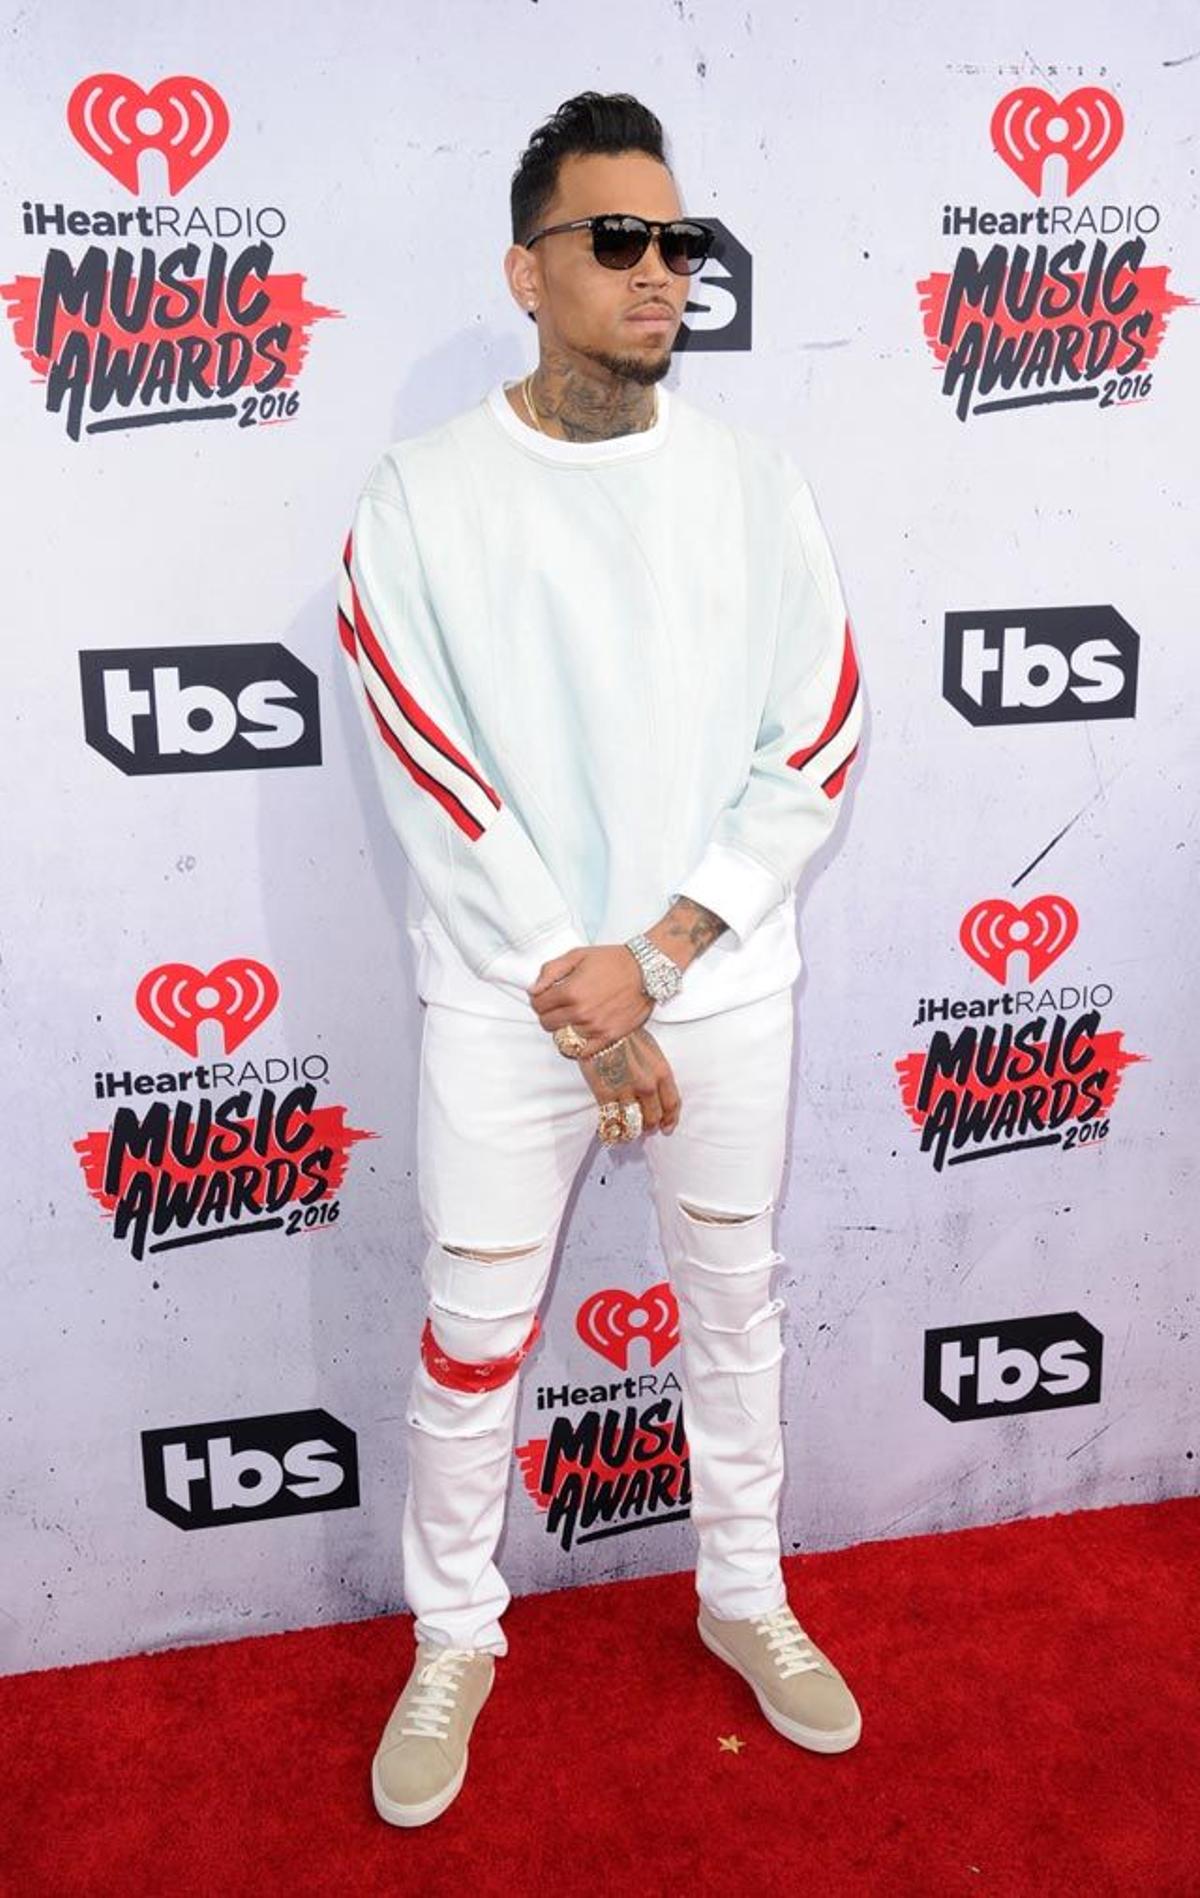 Chris Brown, en la alfombra roja de los iHeartRadio Awards 2016.